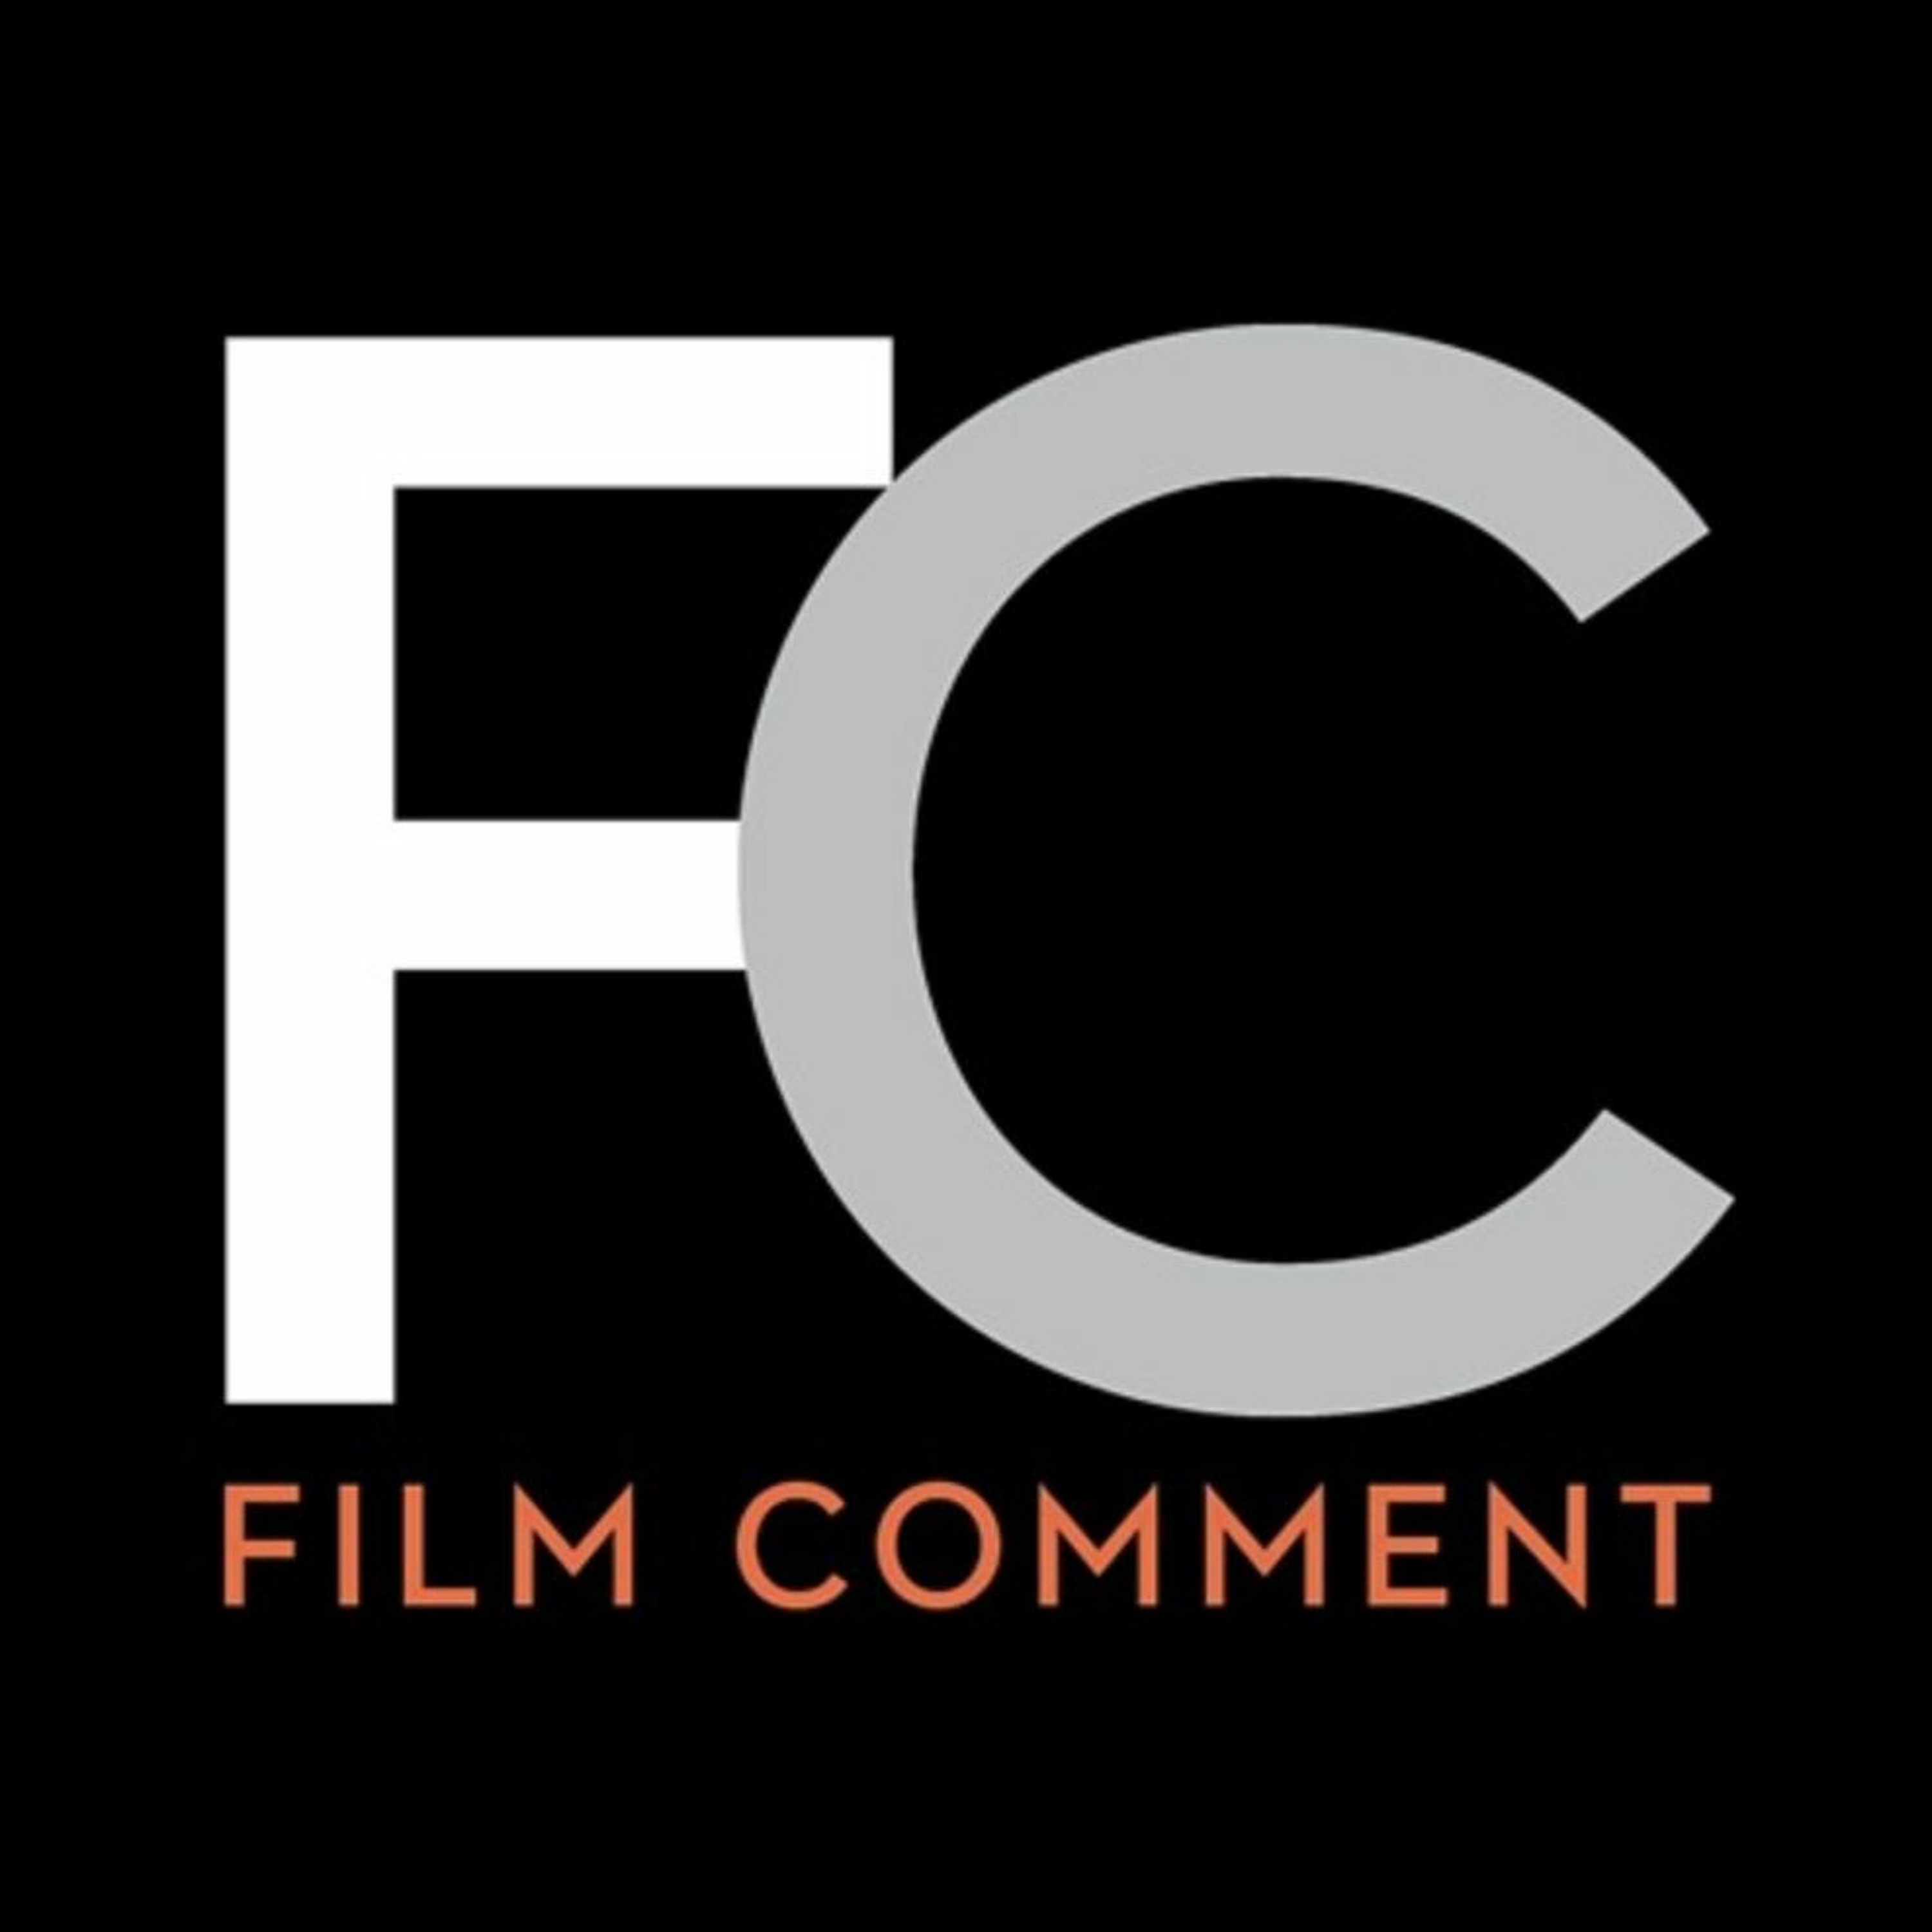 Adam Shatz on Frantz Fanon in Cinema